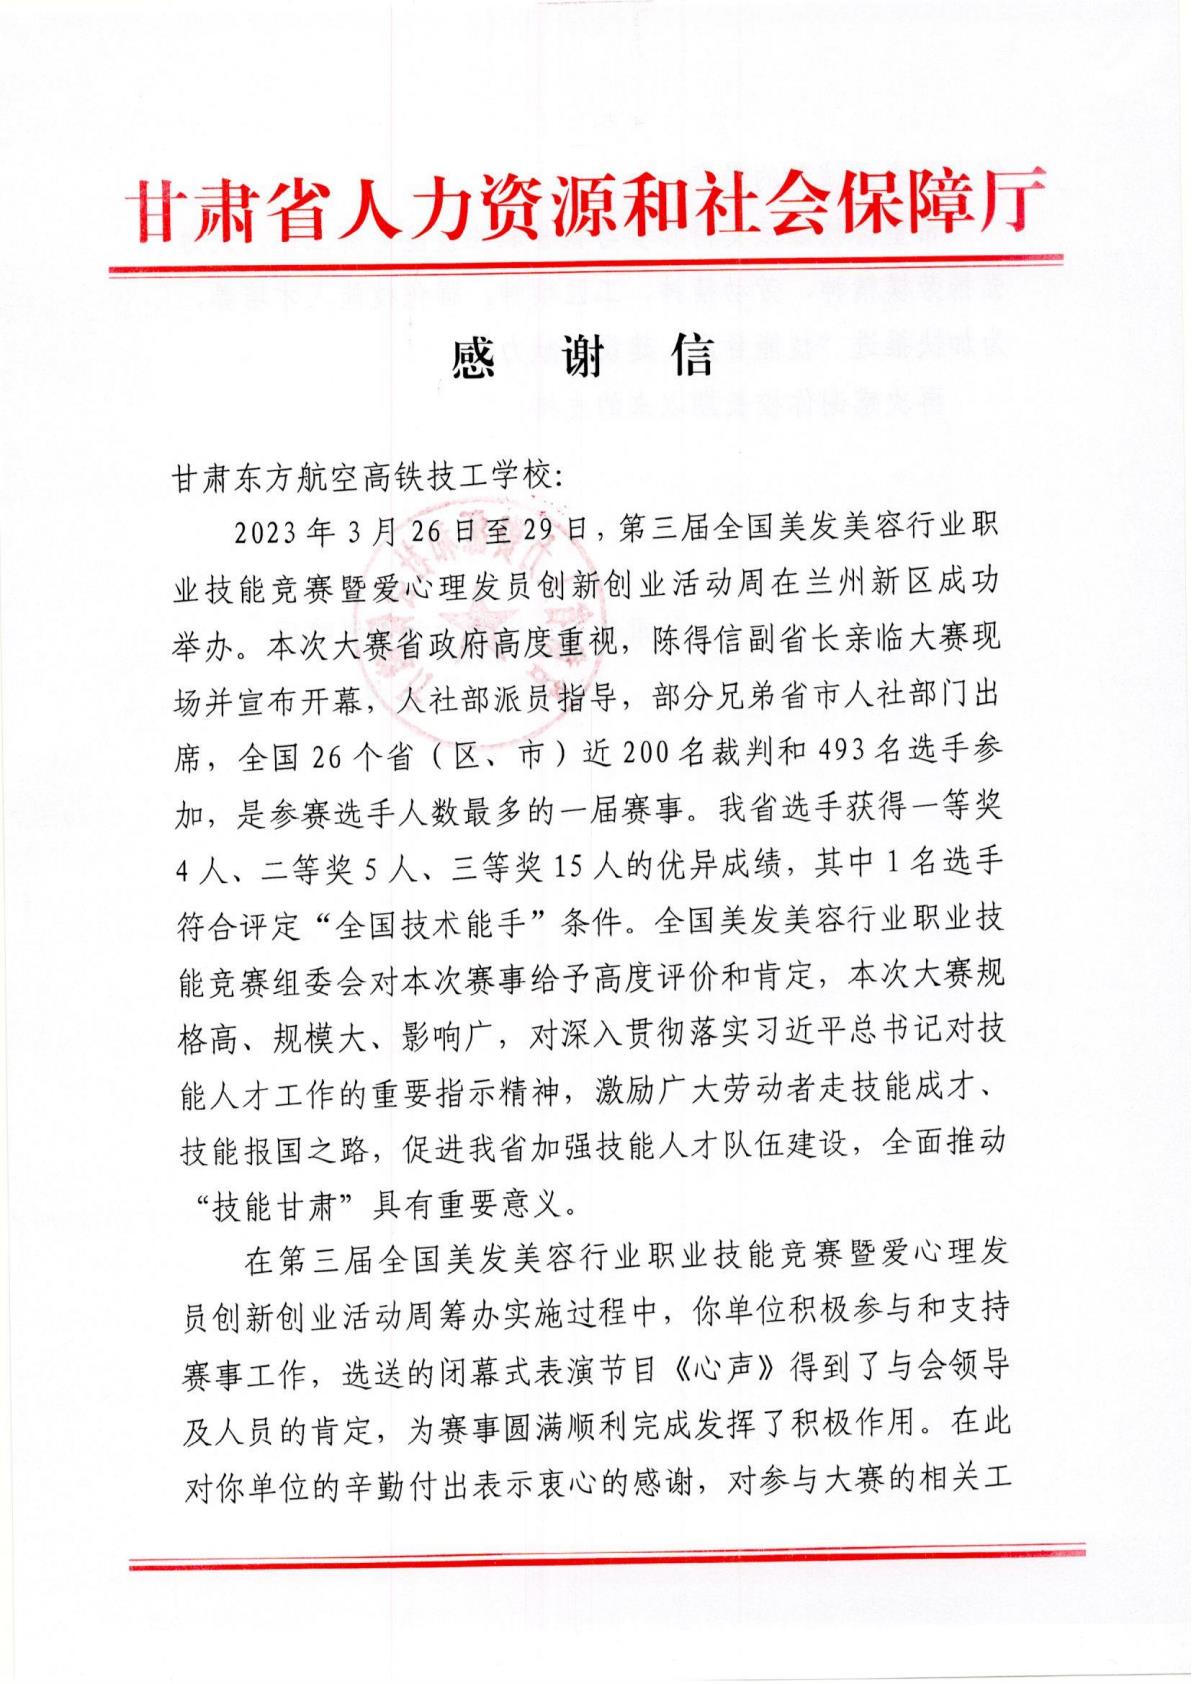 【喜报】甘肃省人力资源和社会保障厅向我校发出感谢信